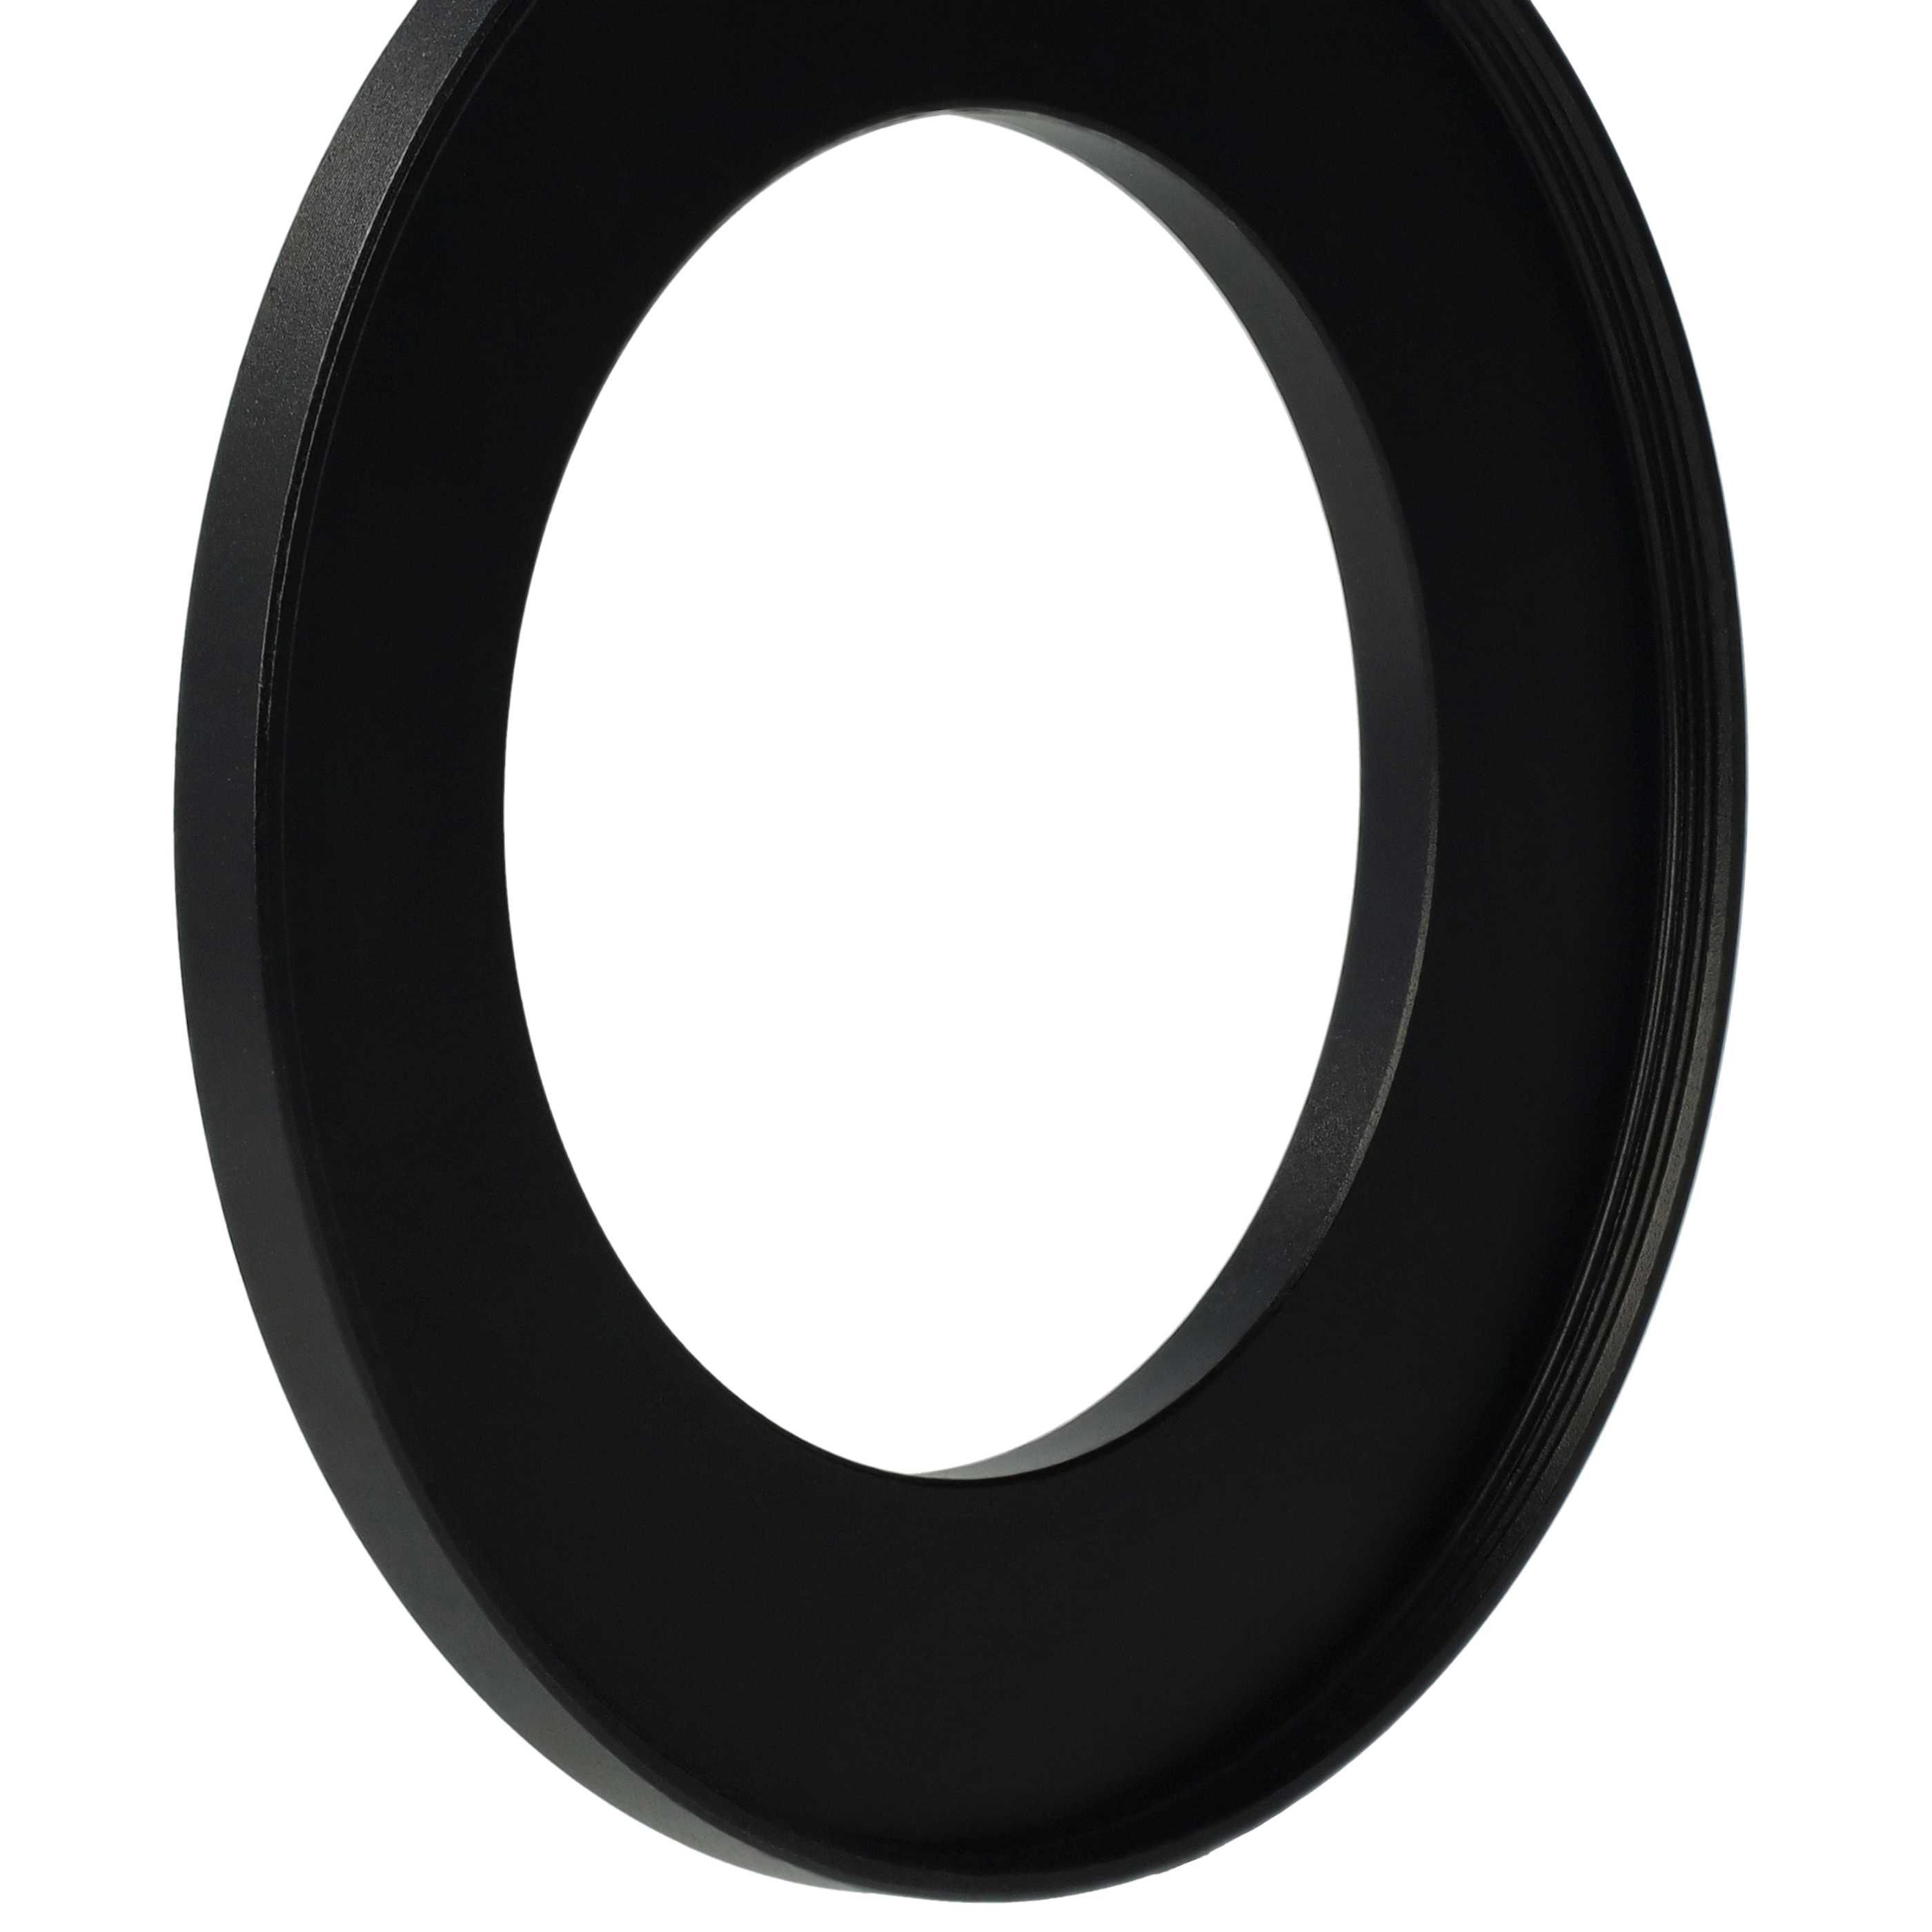 Step-Up-Ring Adapter 49 mm auf 72 mm passend für diverse Kamera-Objektive - Filteradapter